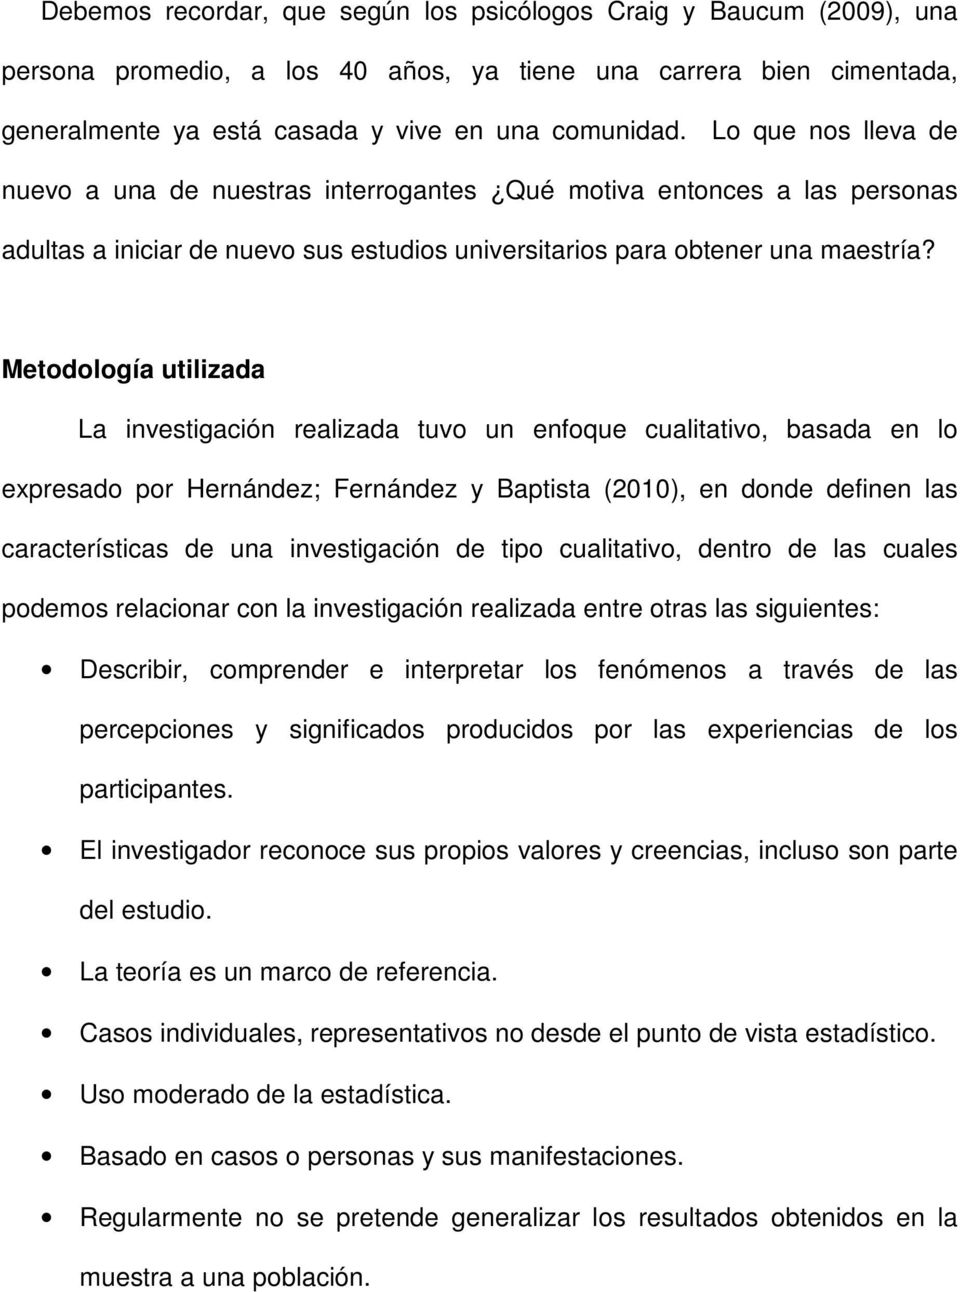 Metodología utilizada La investigación realizada tuvo un enfoque cualitativo, basada en lo expresado por Hernández; Fernández y Baptista (2010), en donde definen las características de una